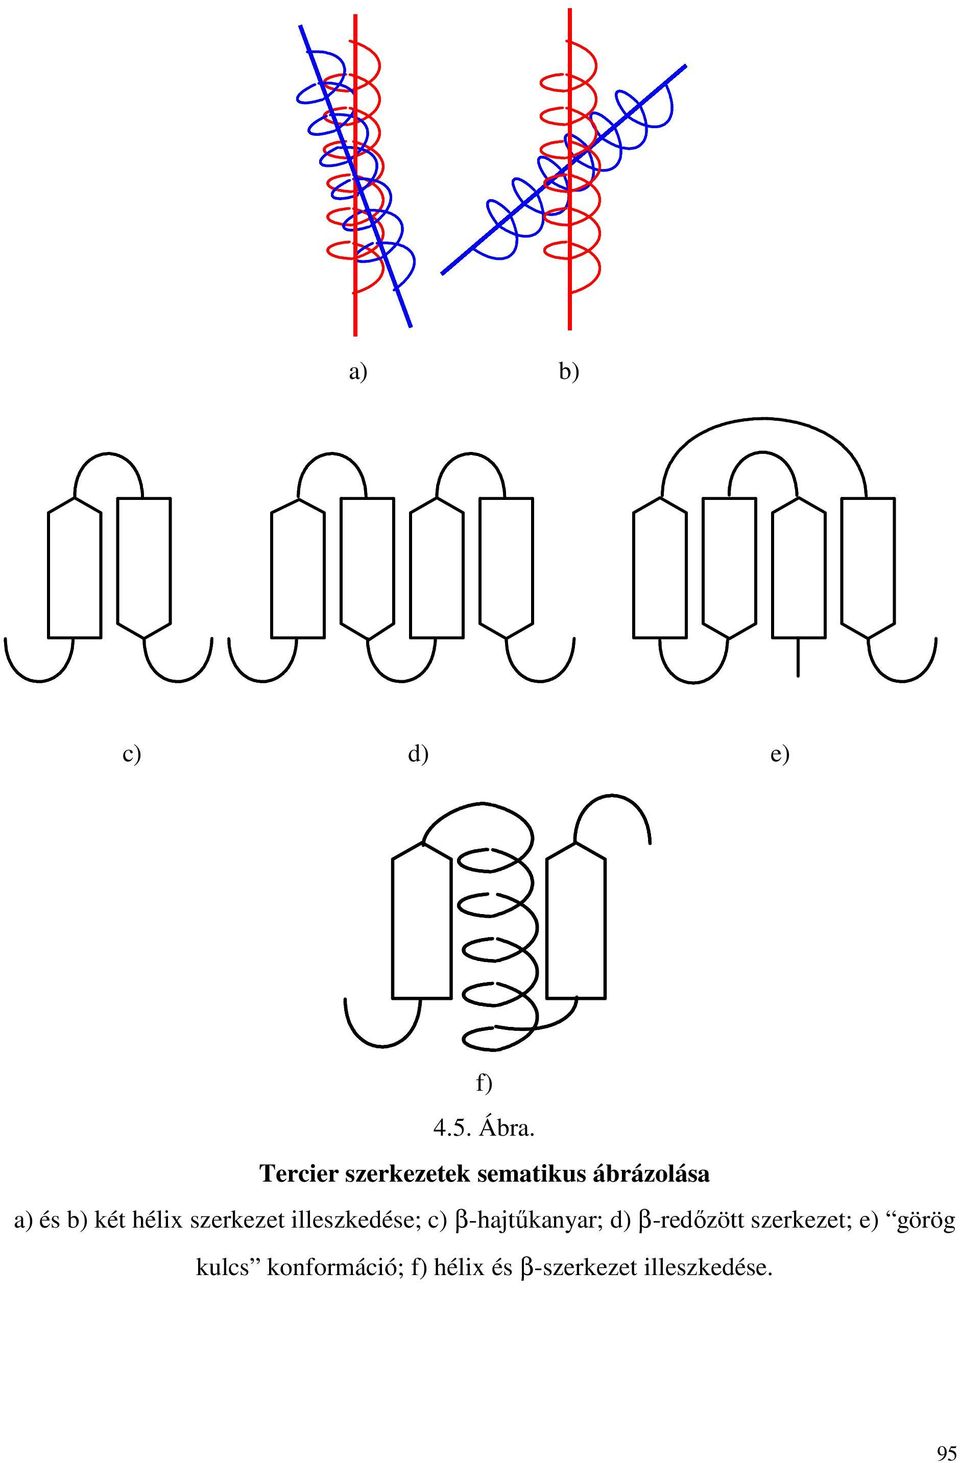 hélix szerkezet illeszkedése; c) β-hajtőkanyar; d)